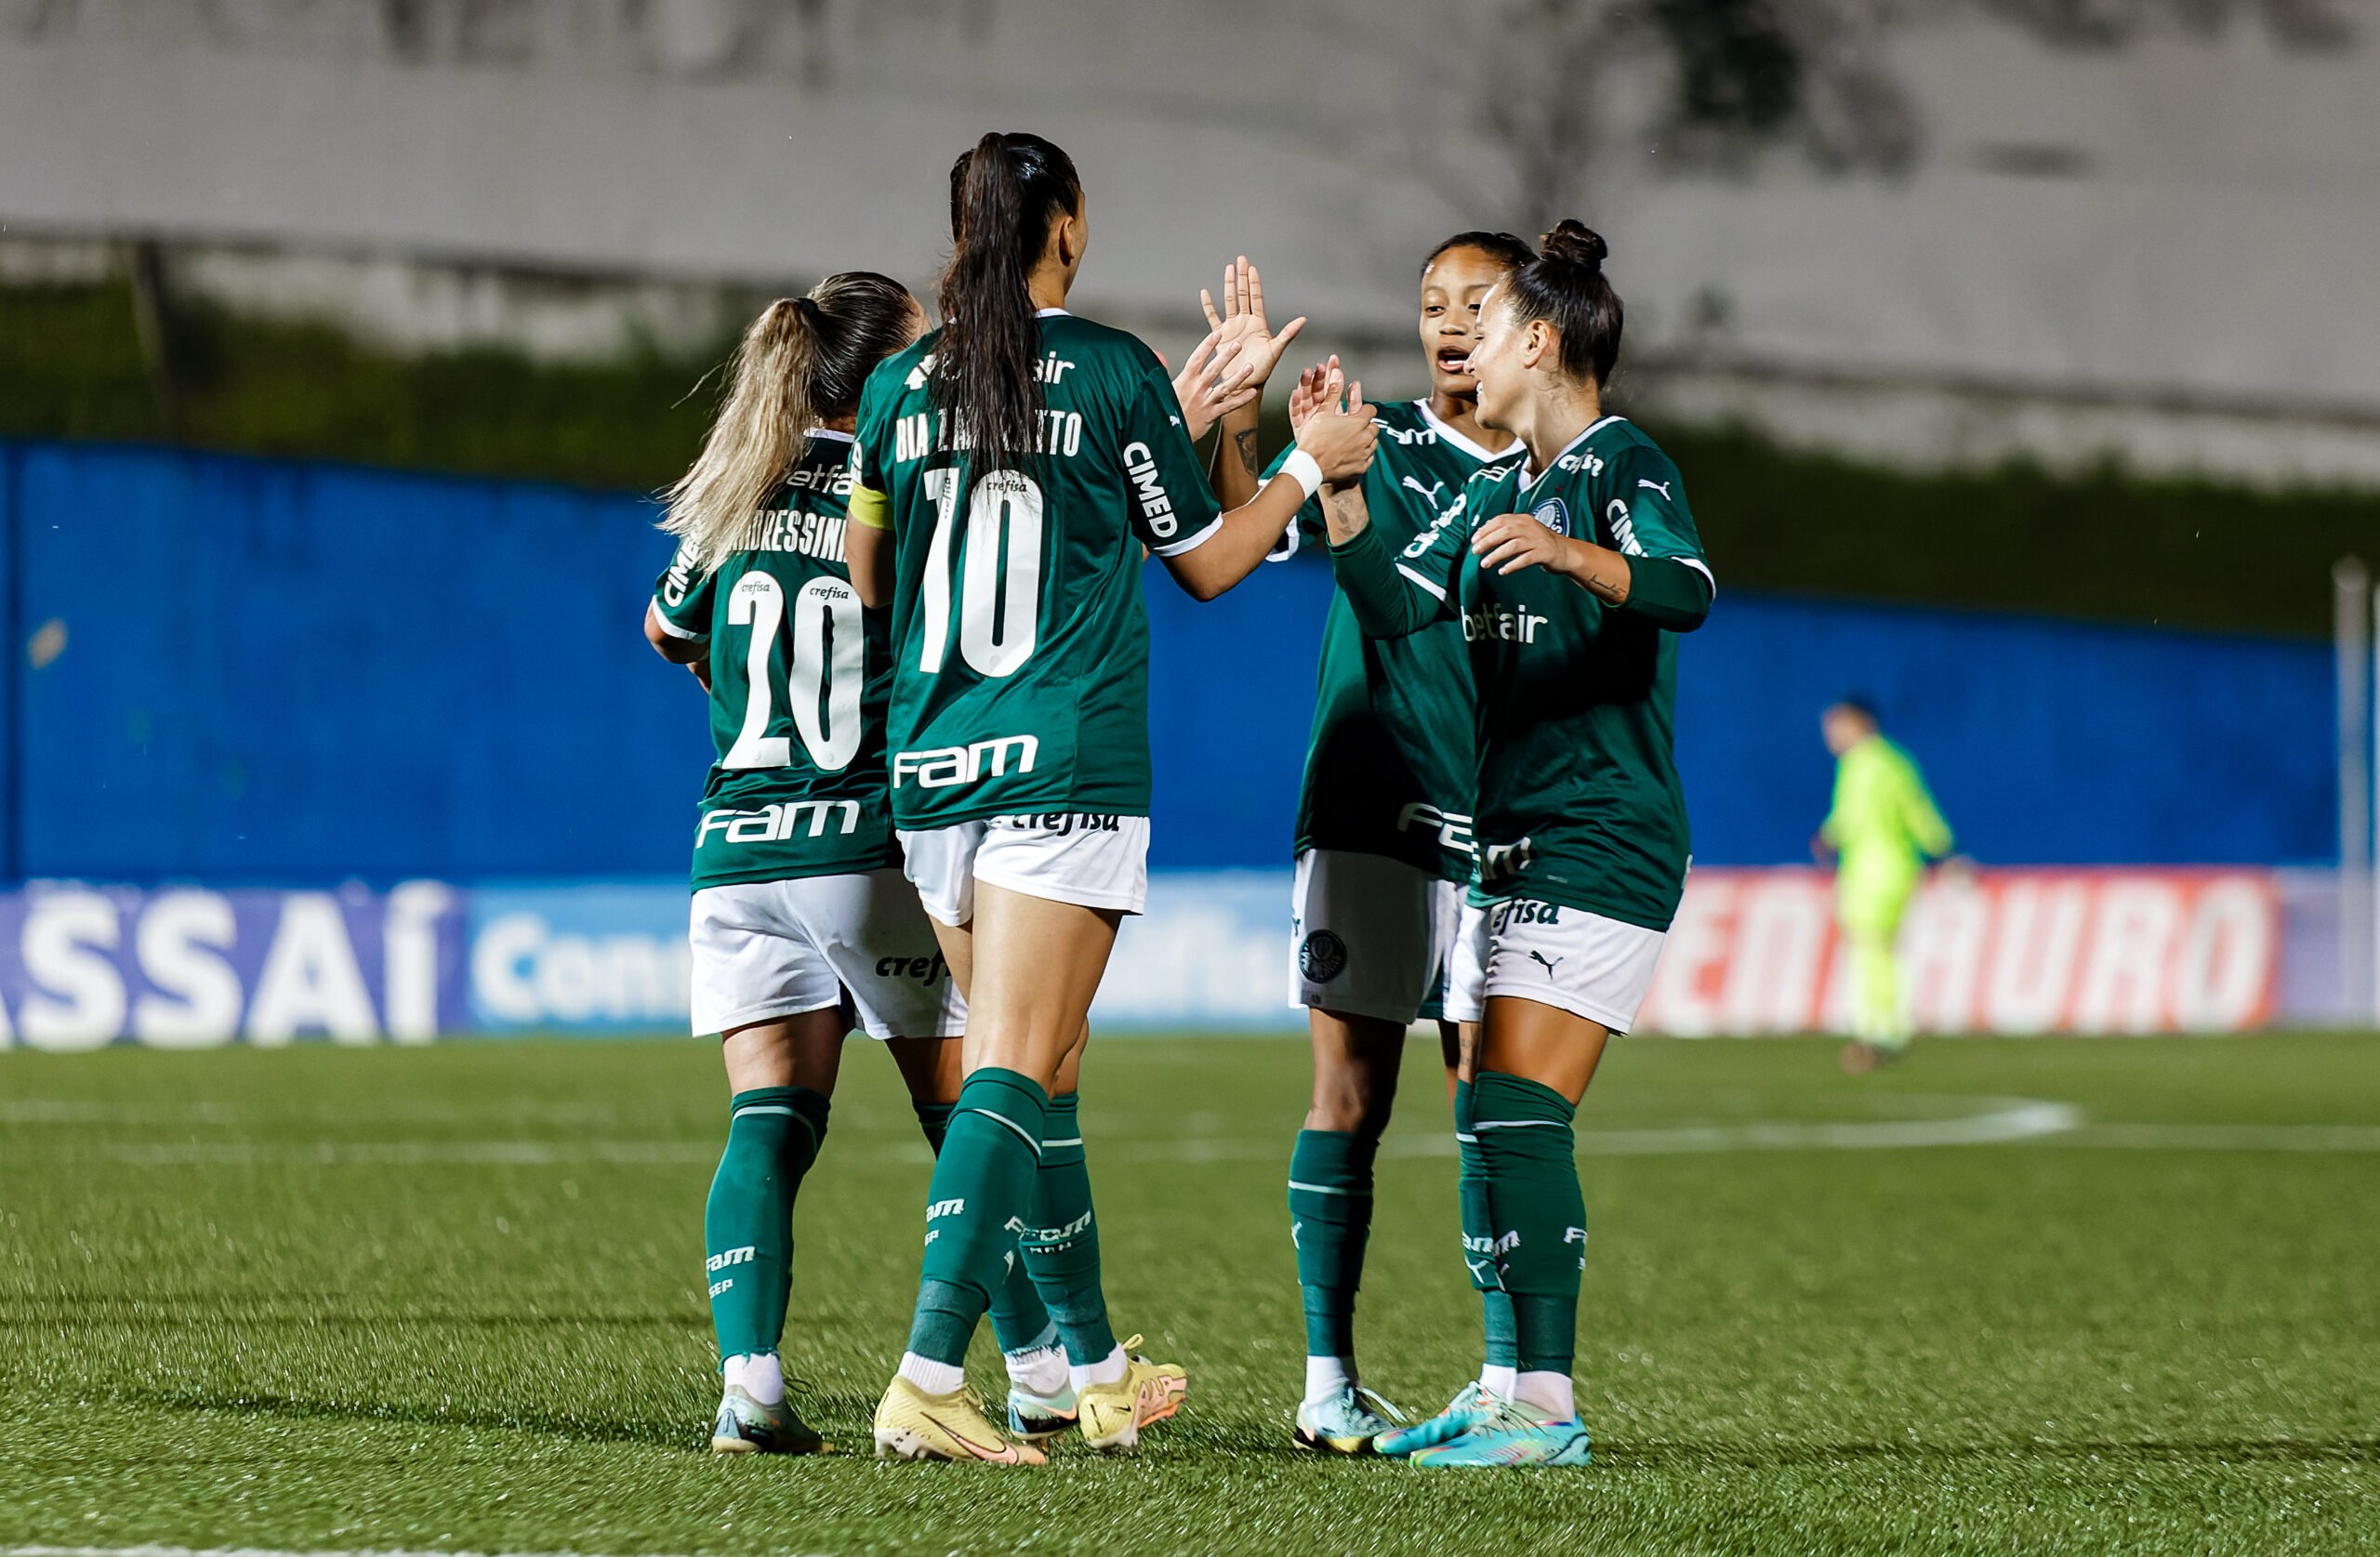 O Palmeiras foi campeão da Conmebol Libertadores Feminina de 2022. Confira quais são os outros times campeões da Libertadores Feminina.